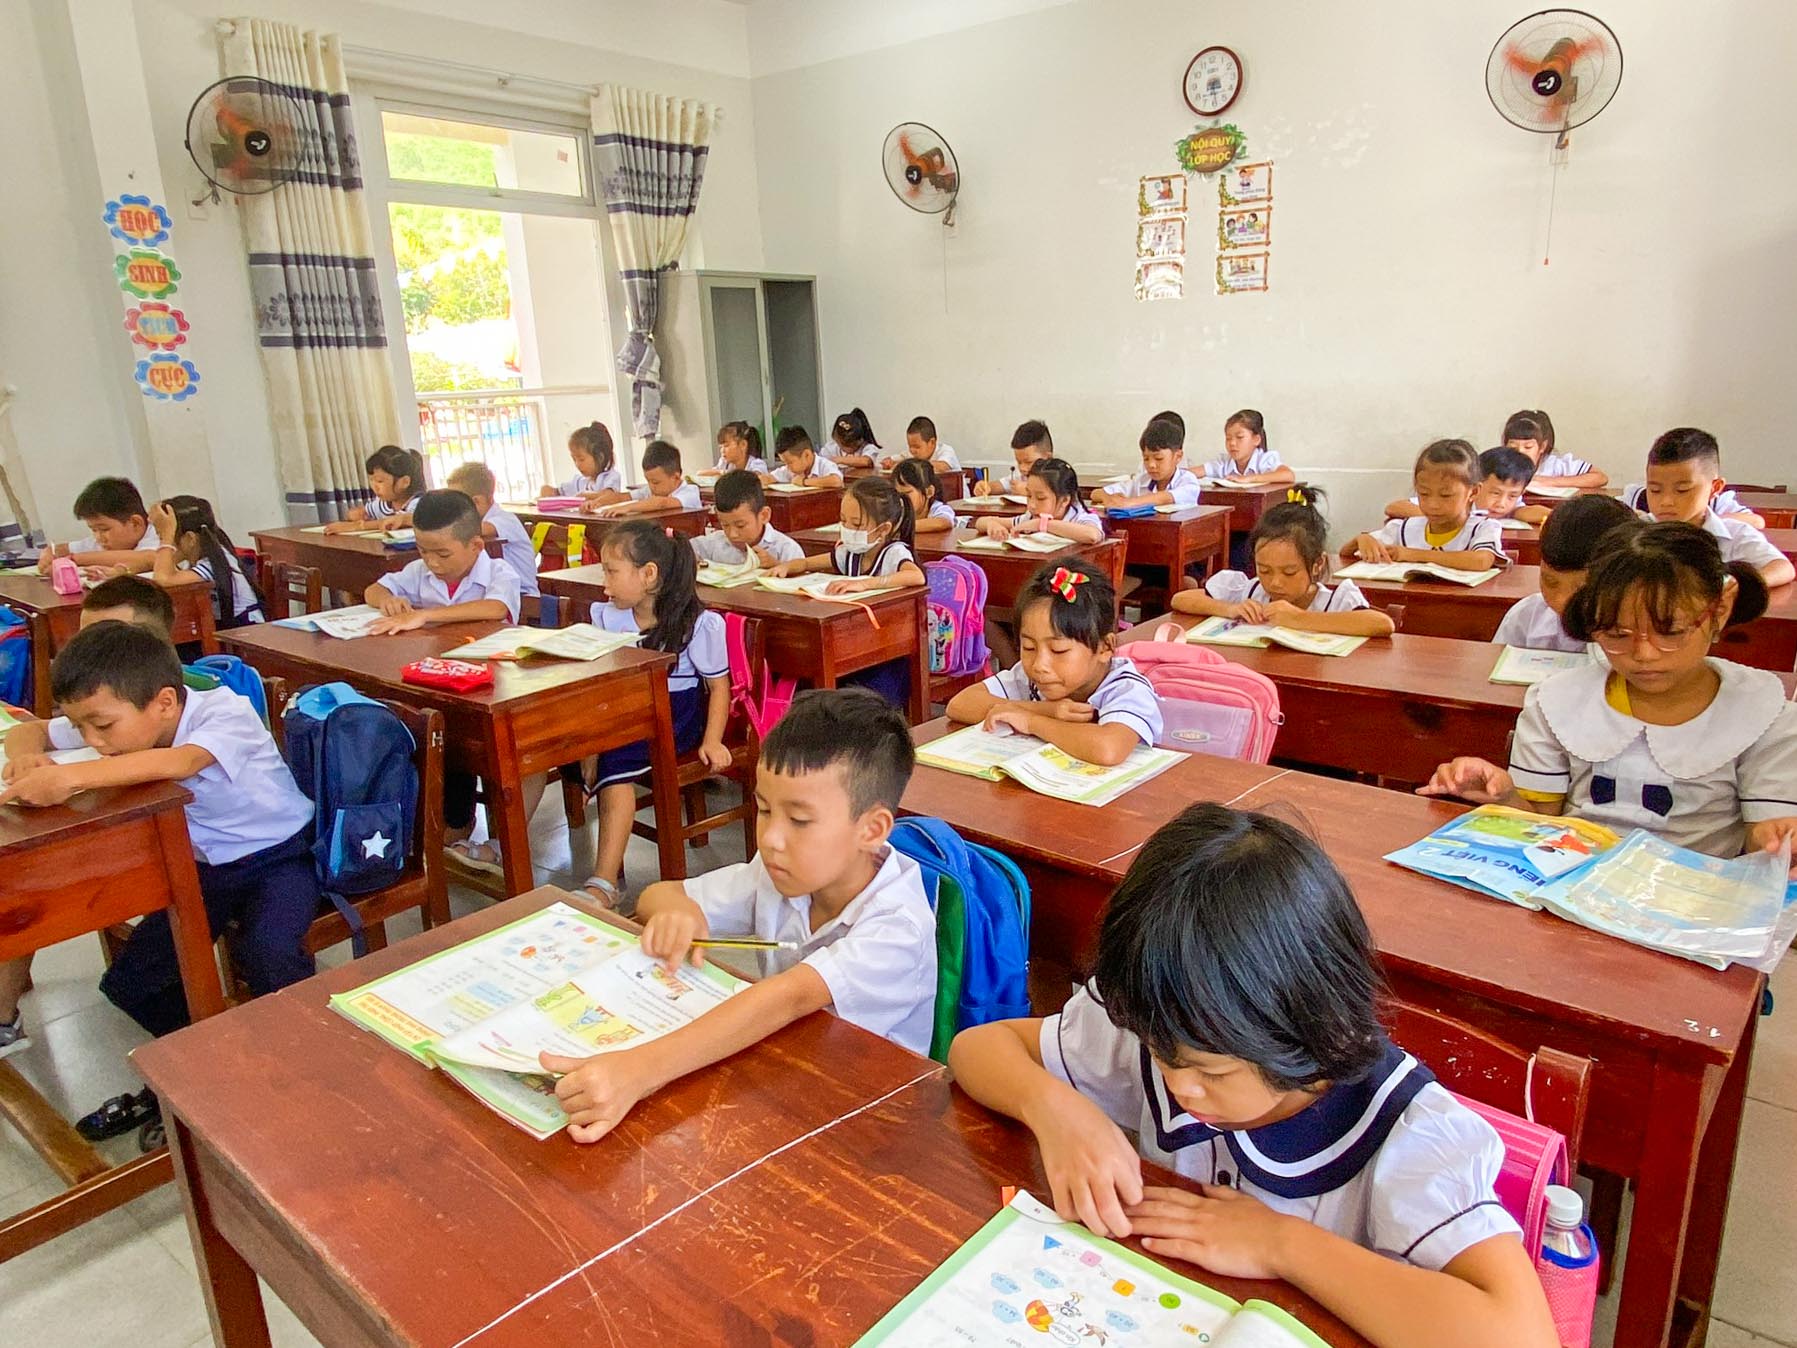 Trường học xây mới 25 tỉ: Cô giáo vỡ òa hạnh phúc khi học sinh đi học - Ảnh 1.